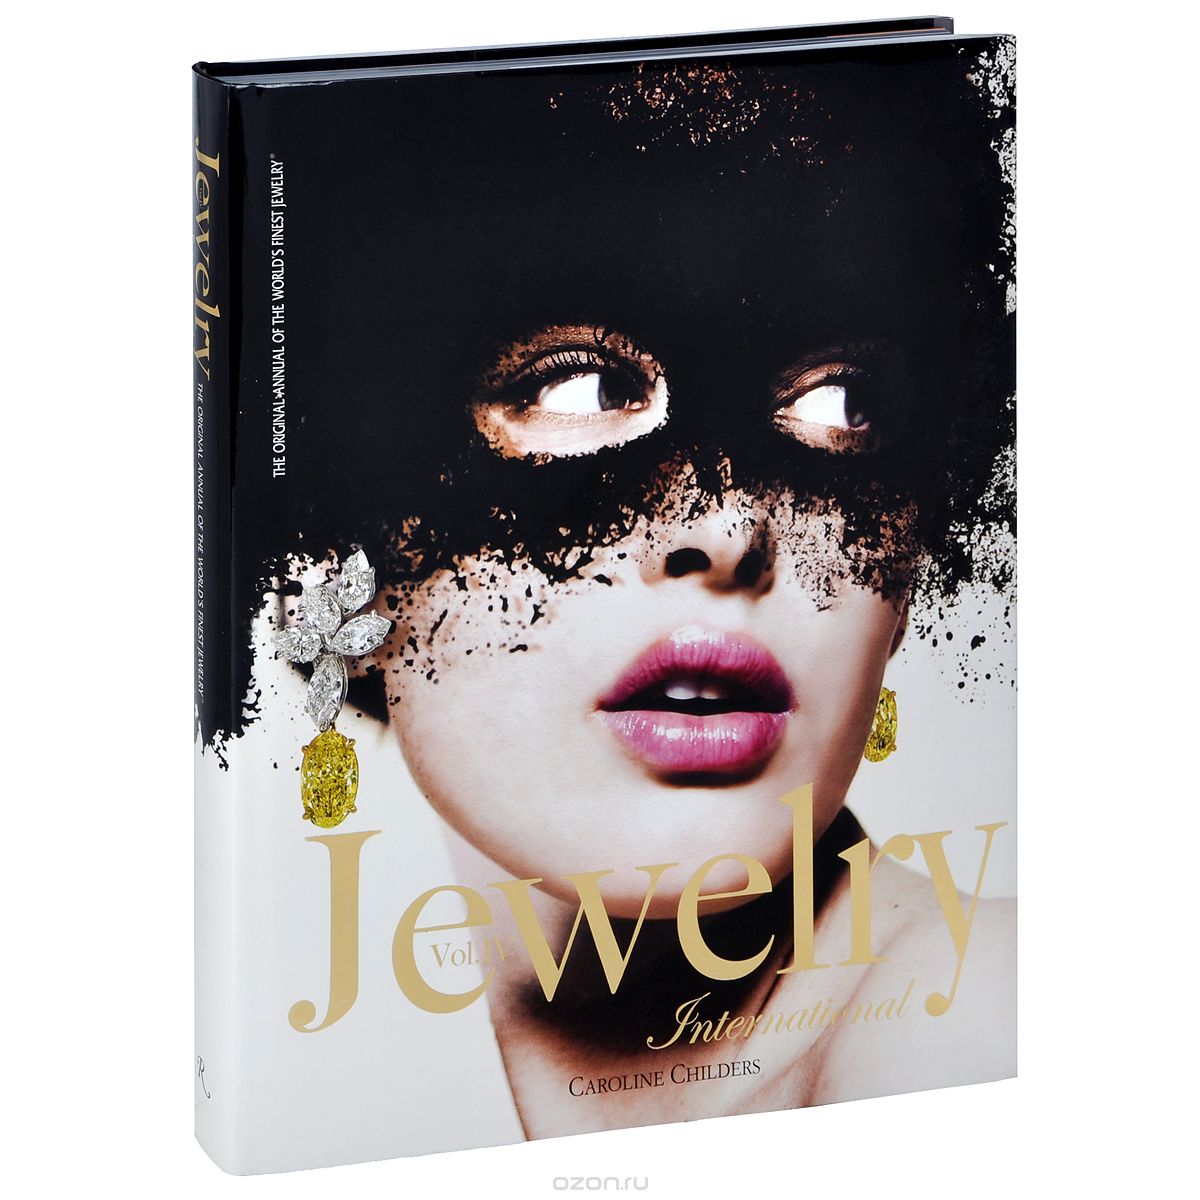 Скачать книгу "Jewelry International: Volume IV"